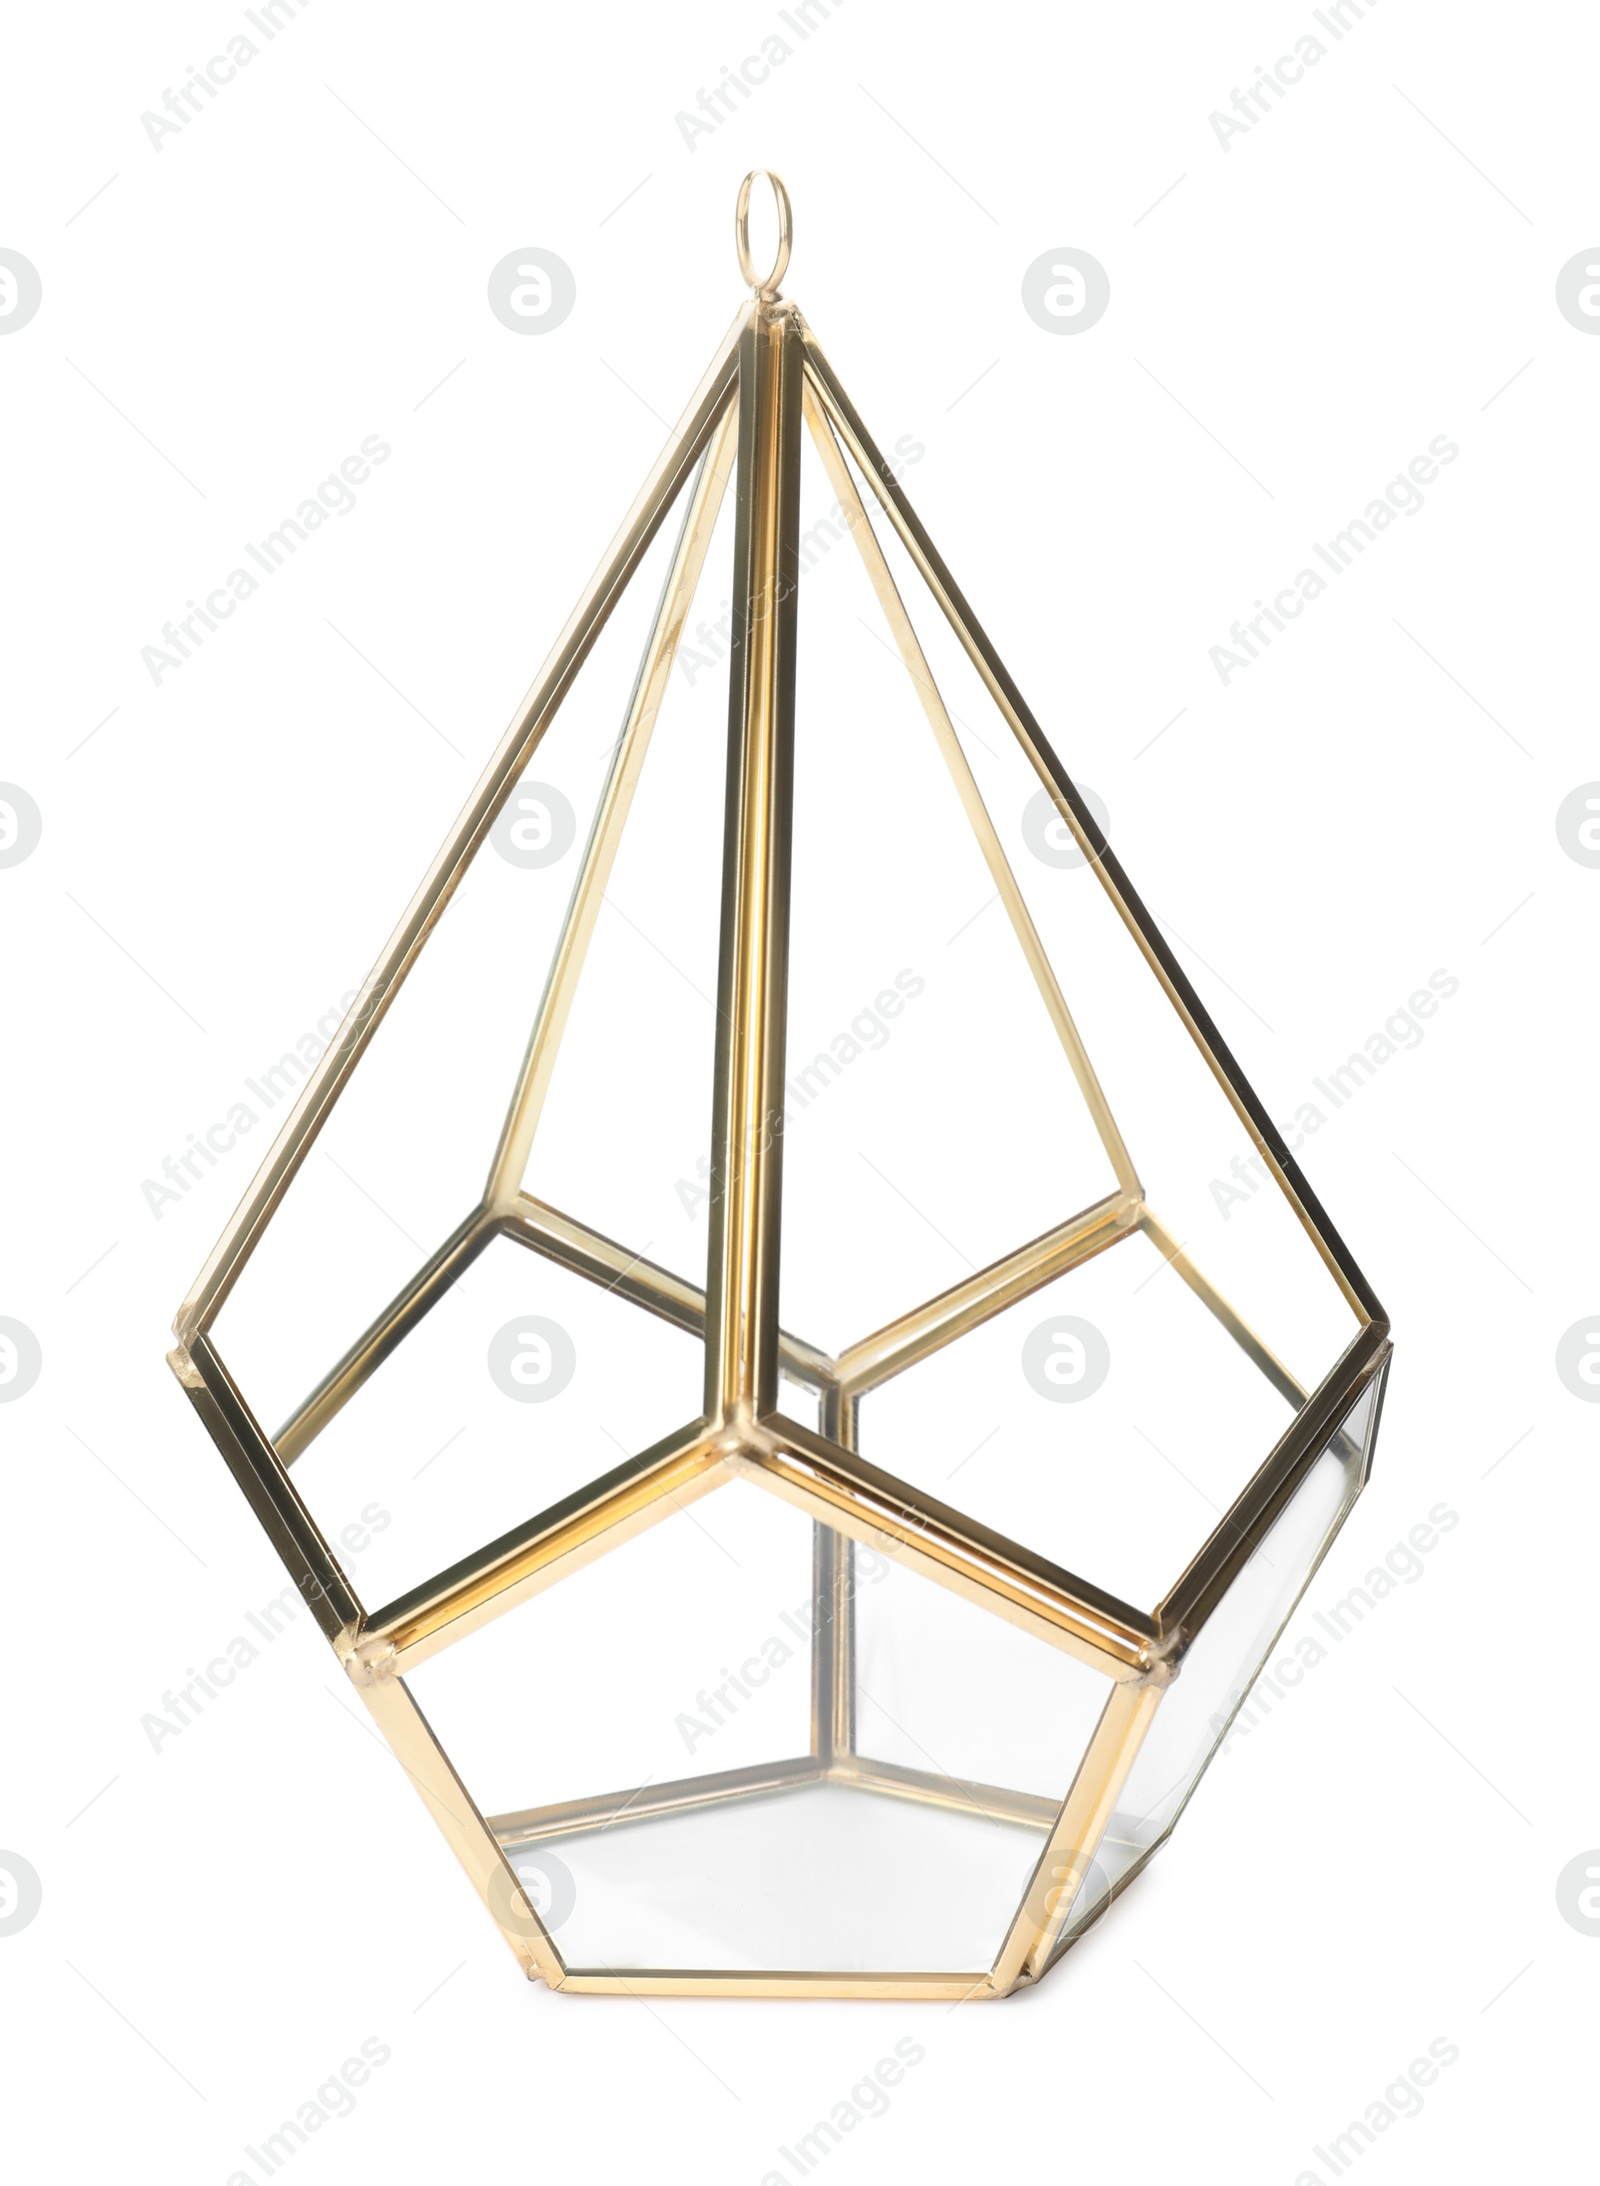 Photo of Stylish gold candle holder isolated on white